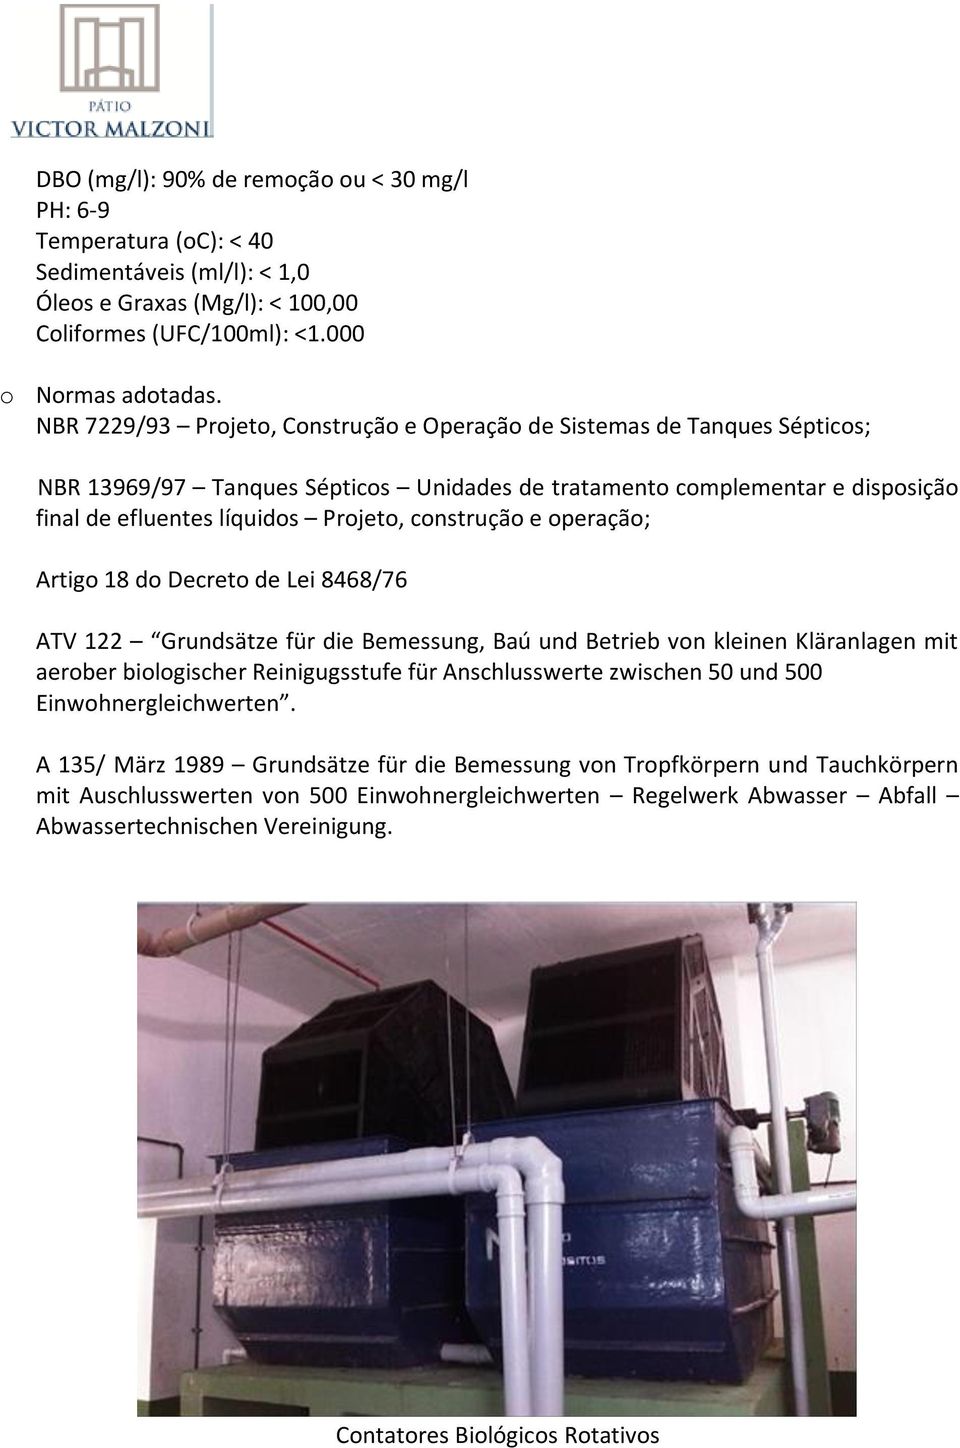 construção e operação; Artigo 18 do Decreto de Lei 8468/76 ATV 122 Grundsätze für die Bemessung, Baú und Betrieb von kleinen Kläranlagen mit aerober biologischer Reinigugsstufe für Anschlusswerte